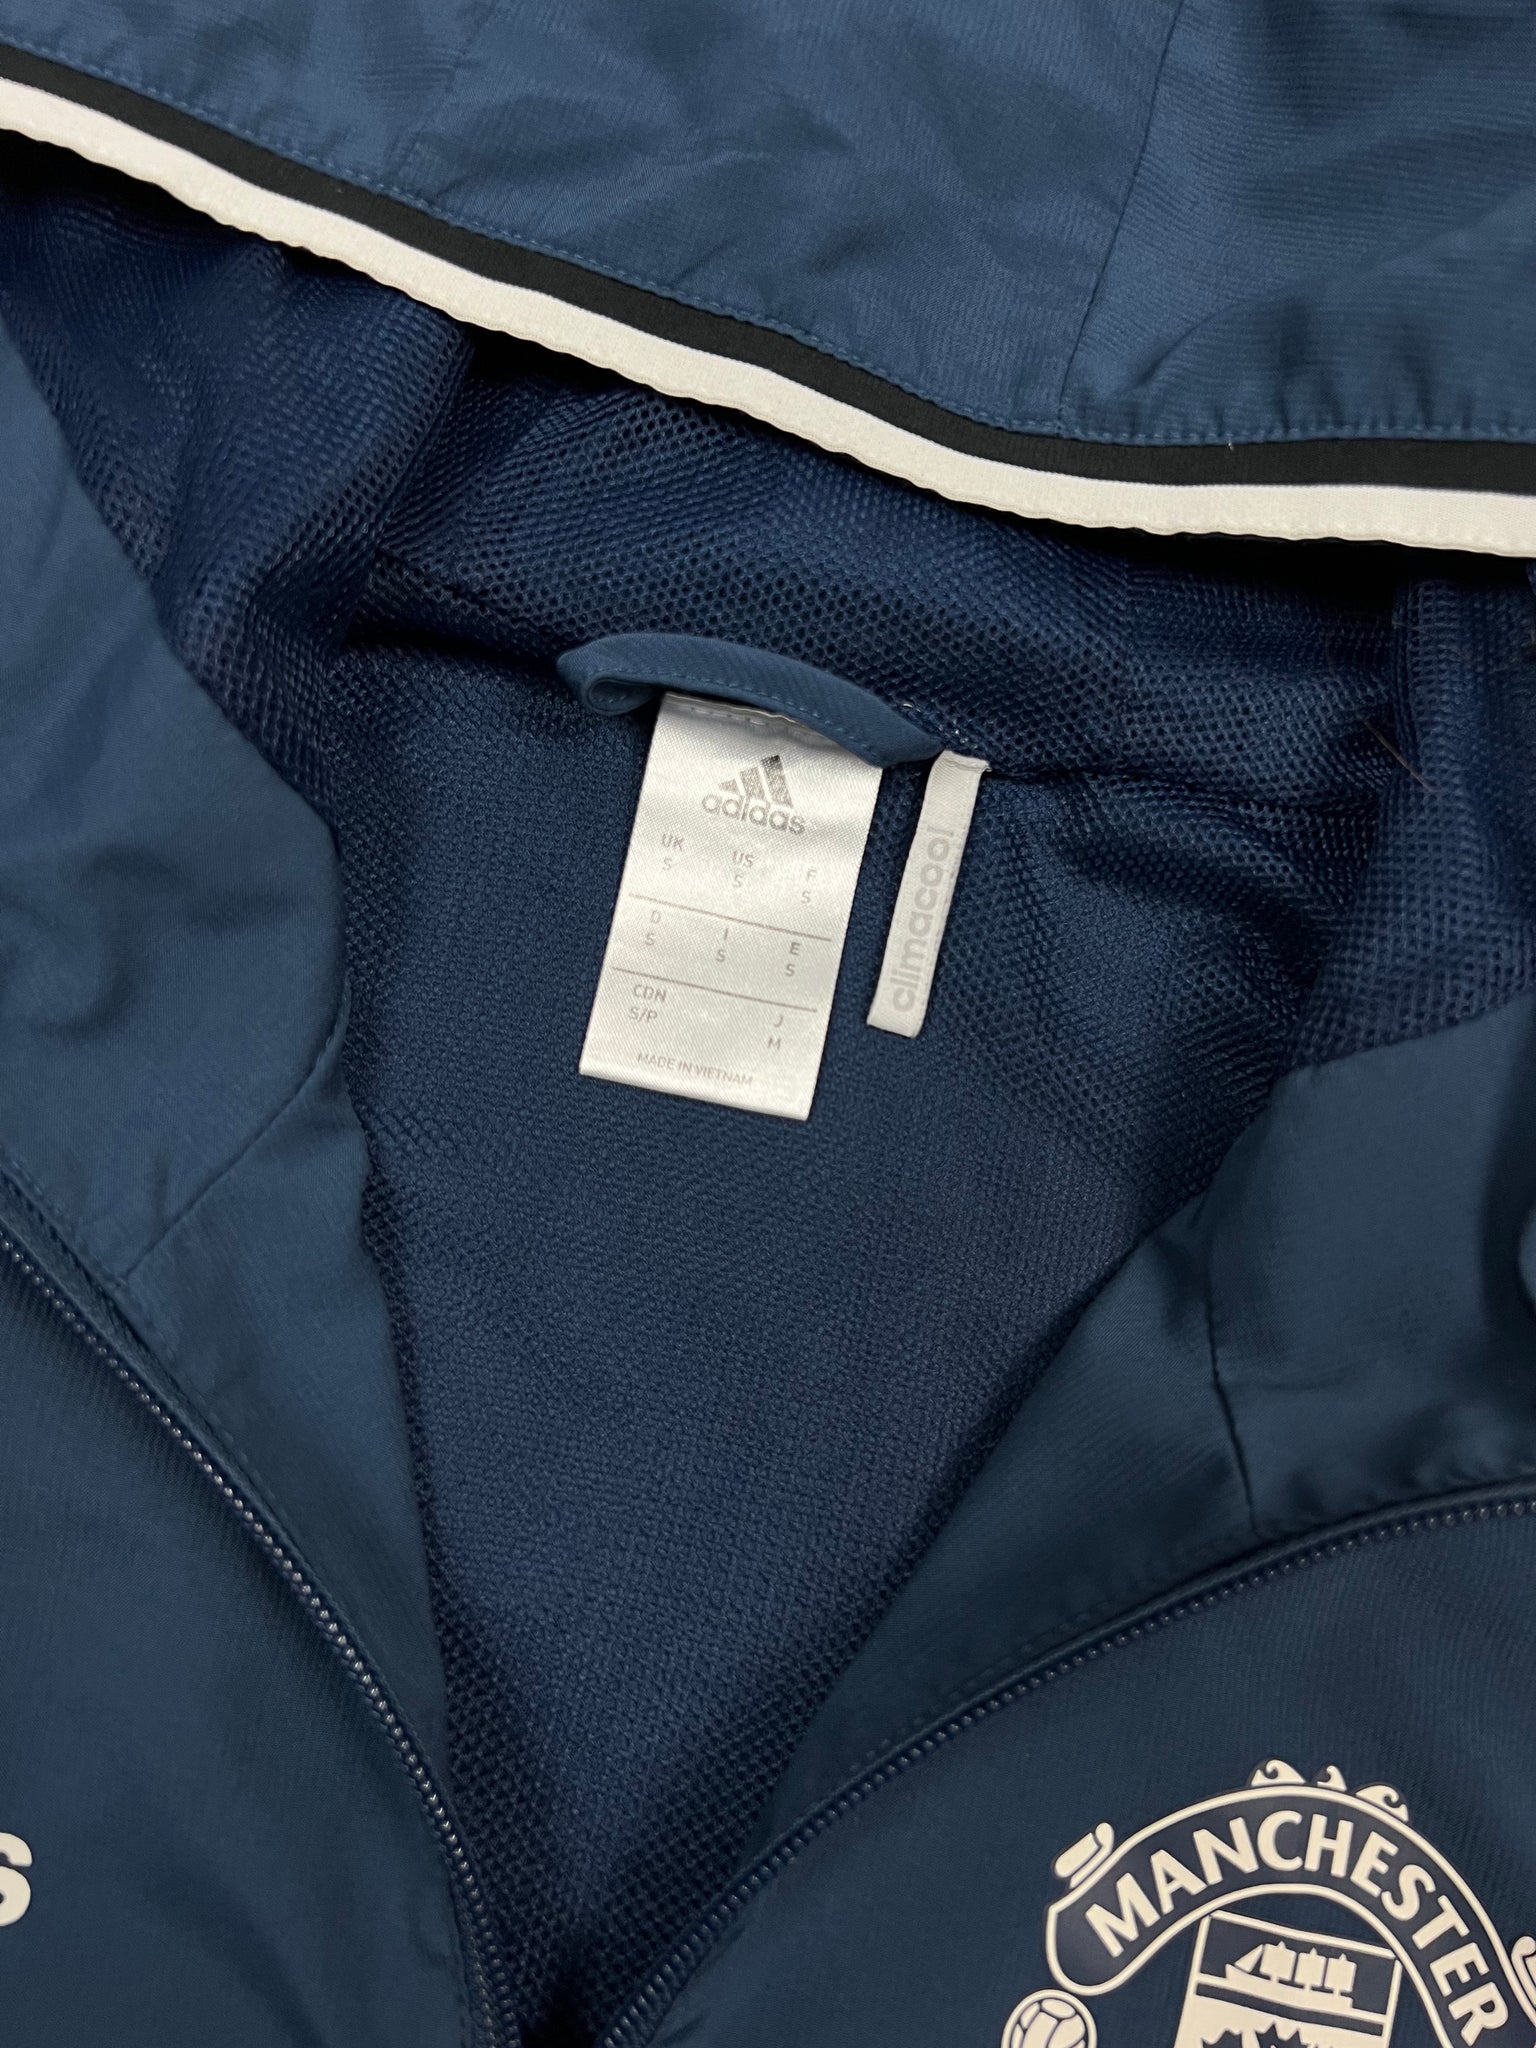 Adidas Manchester United Track Jacket (S)